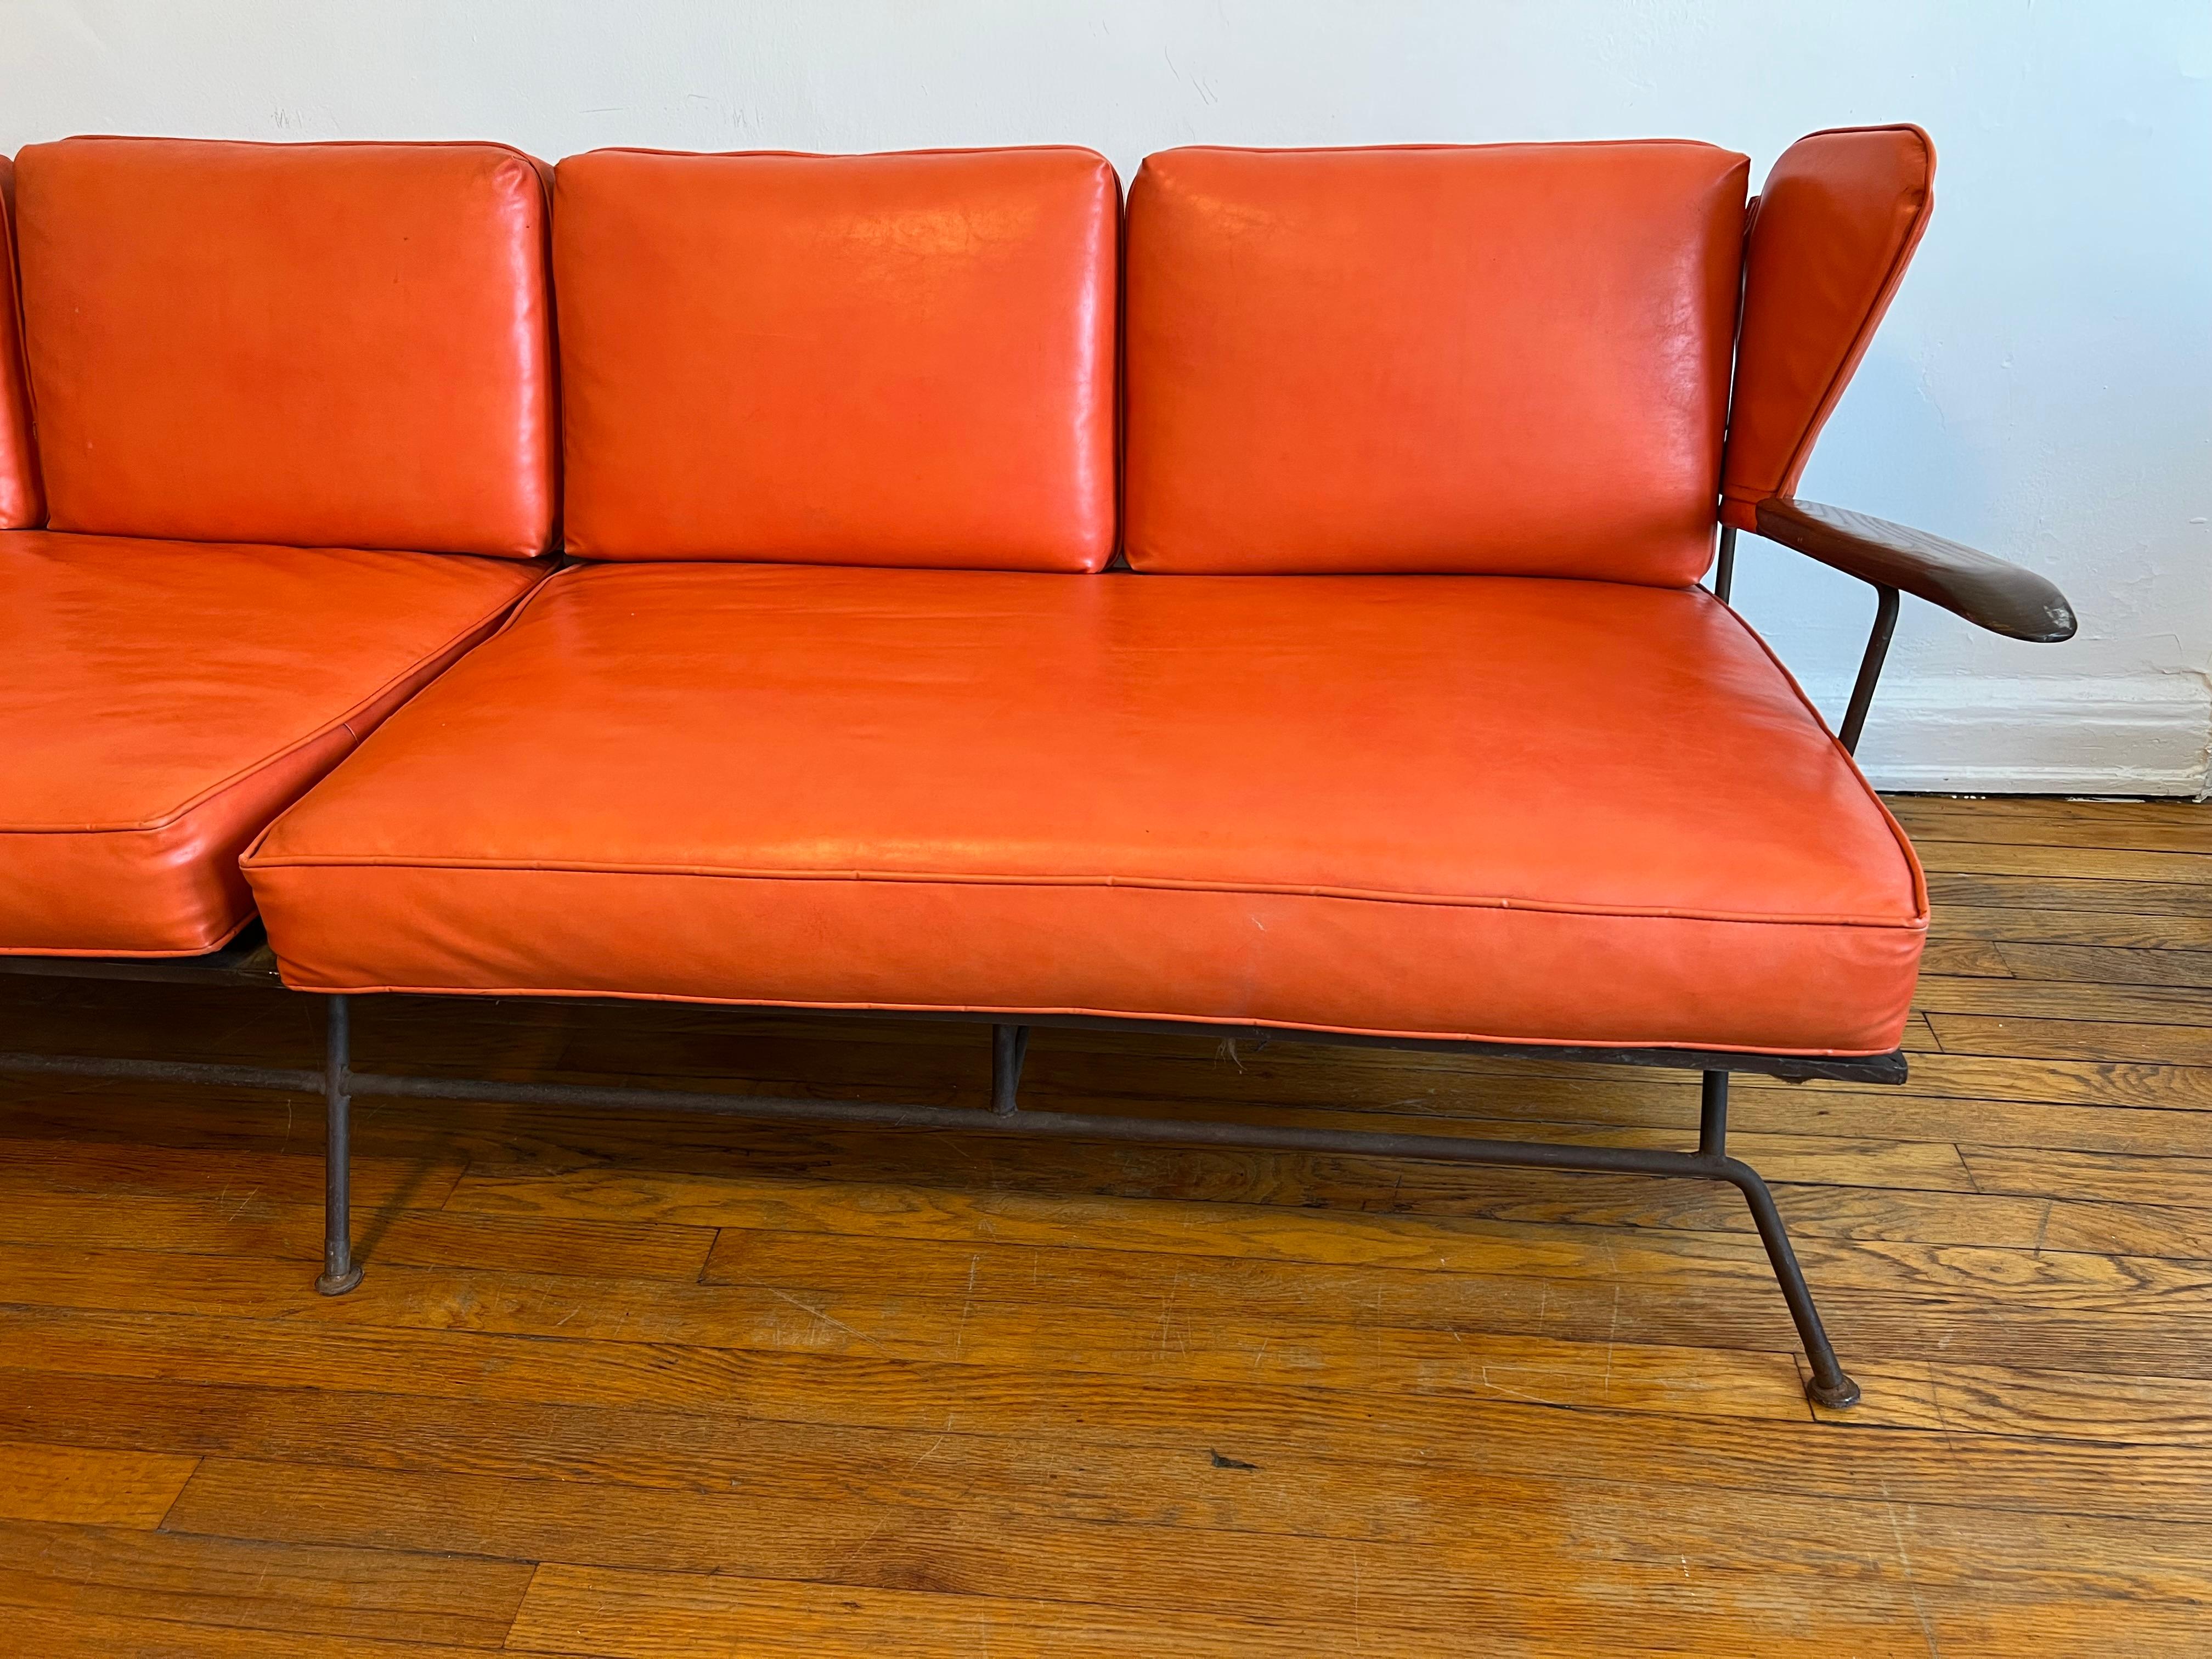 Sehr seltenes Sofa des Schmieds, Möbeldesigners und -herstellers Max Stout aus North Carolina.

Das Sofa befindet sich im kompletten Originalzustand mit originalen Kissen (Schaumstoff) und dem originalen orangefarbenen Naugahyde-Stoff. Es gibt einen